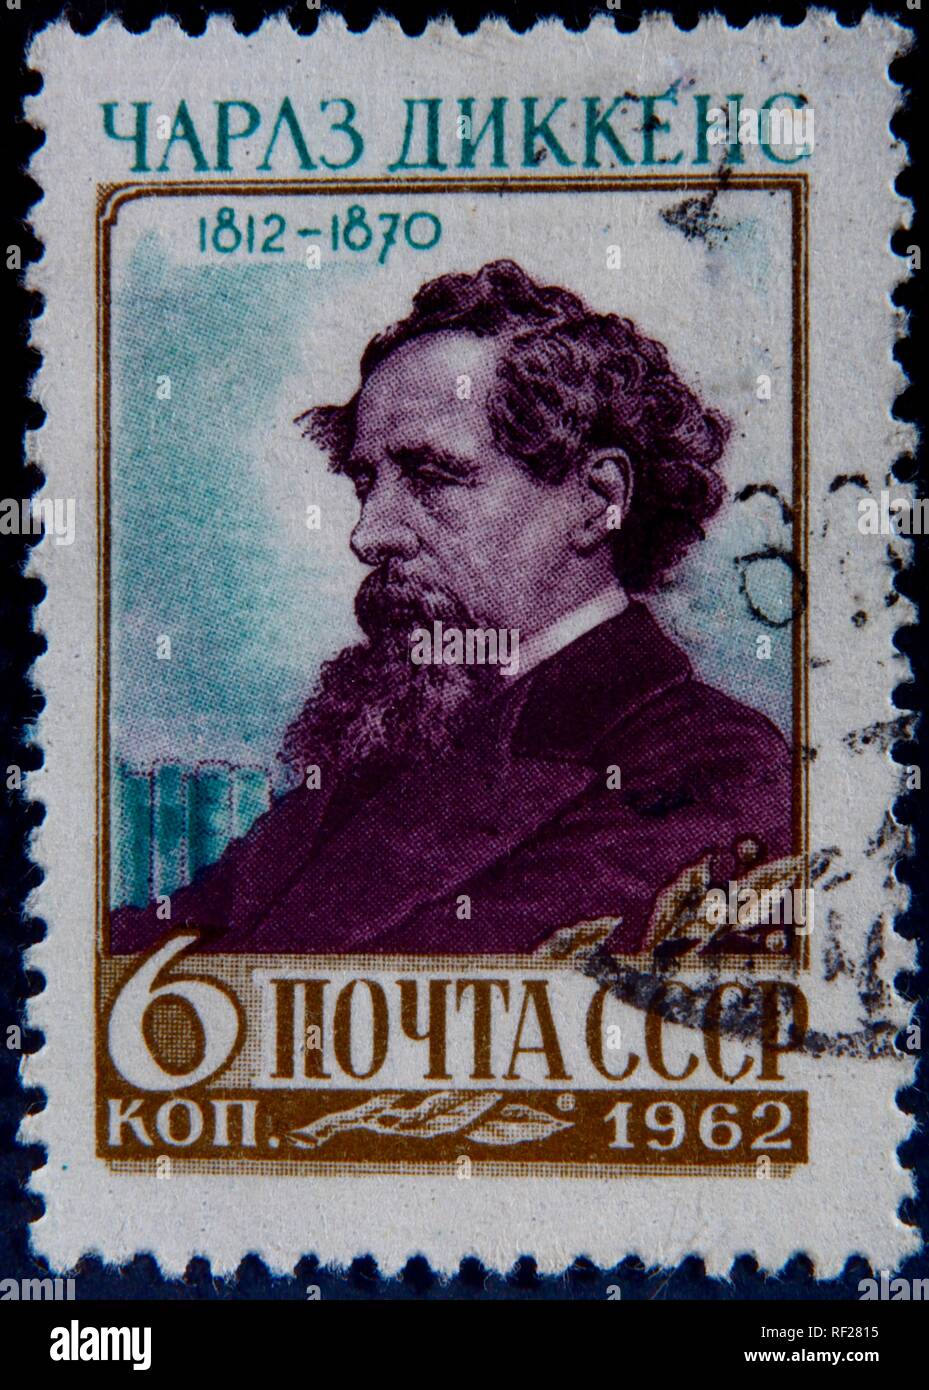 Charles Dickens, auteur anglais, portrait sur un timbre russe, Suède Banque D'Images